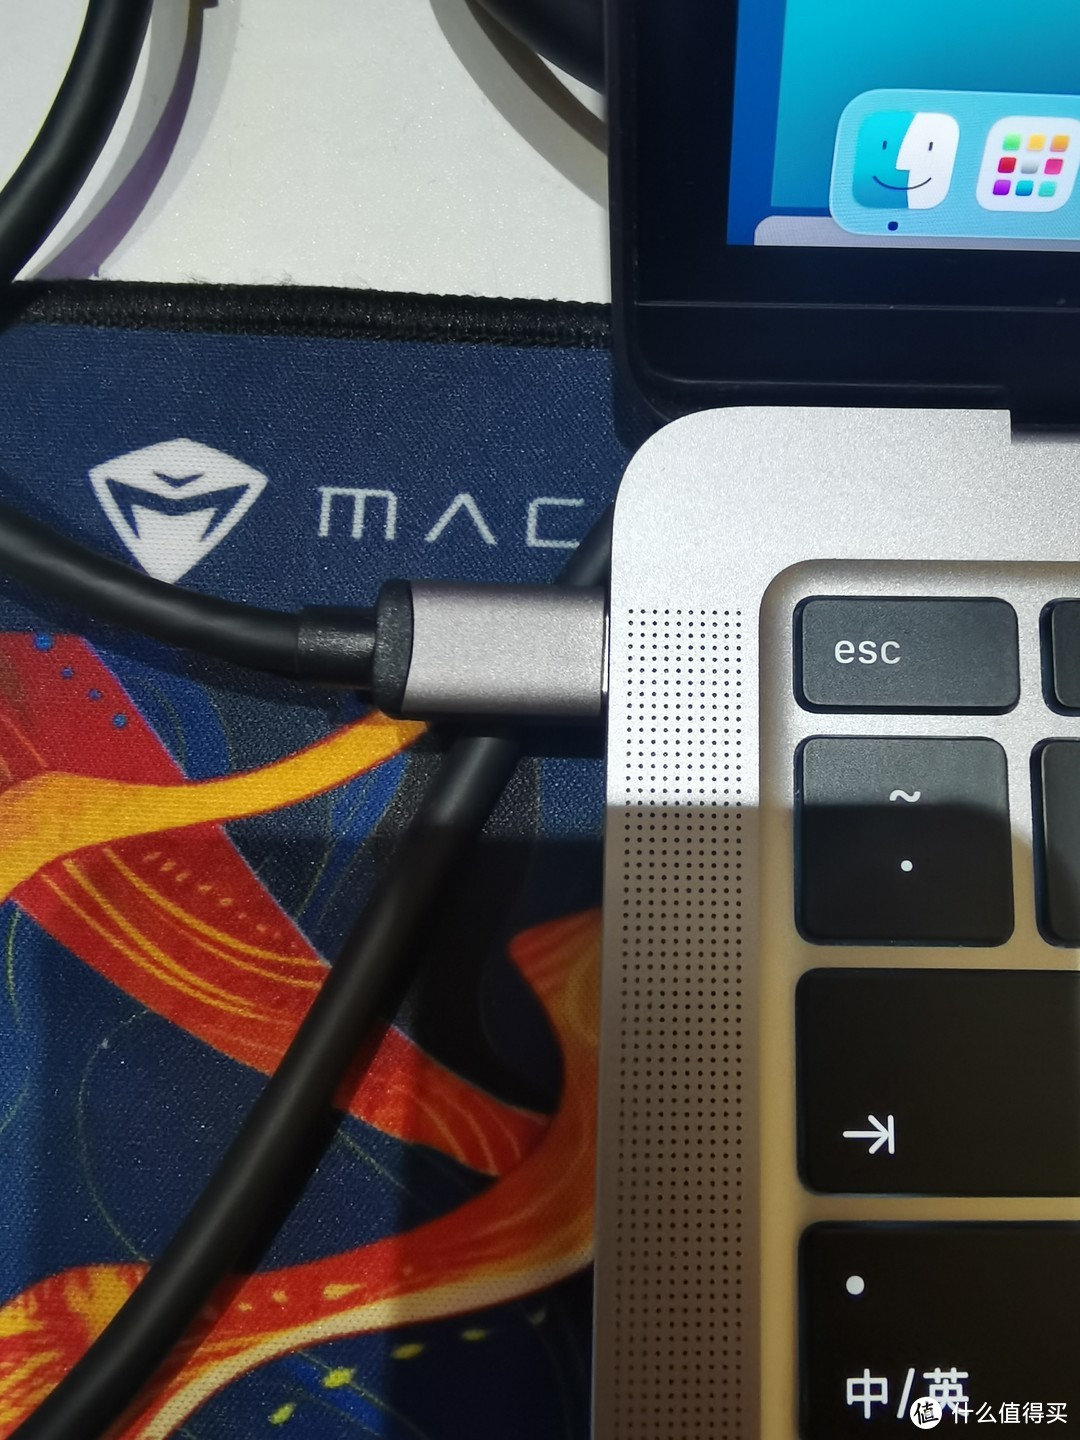 公司给我的配的mac，用一个typec口解决充电和链接外屏